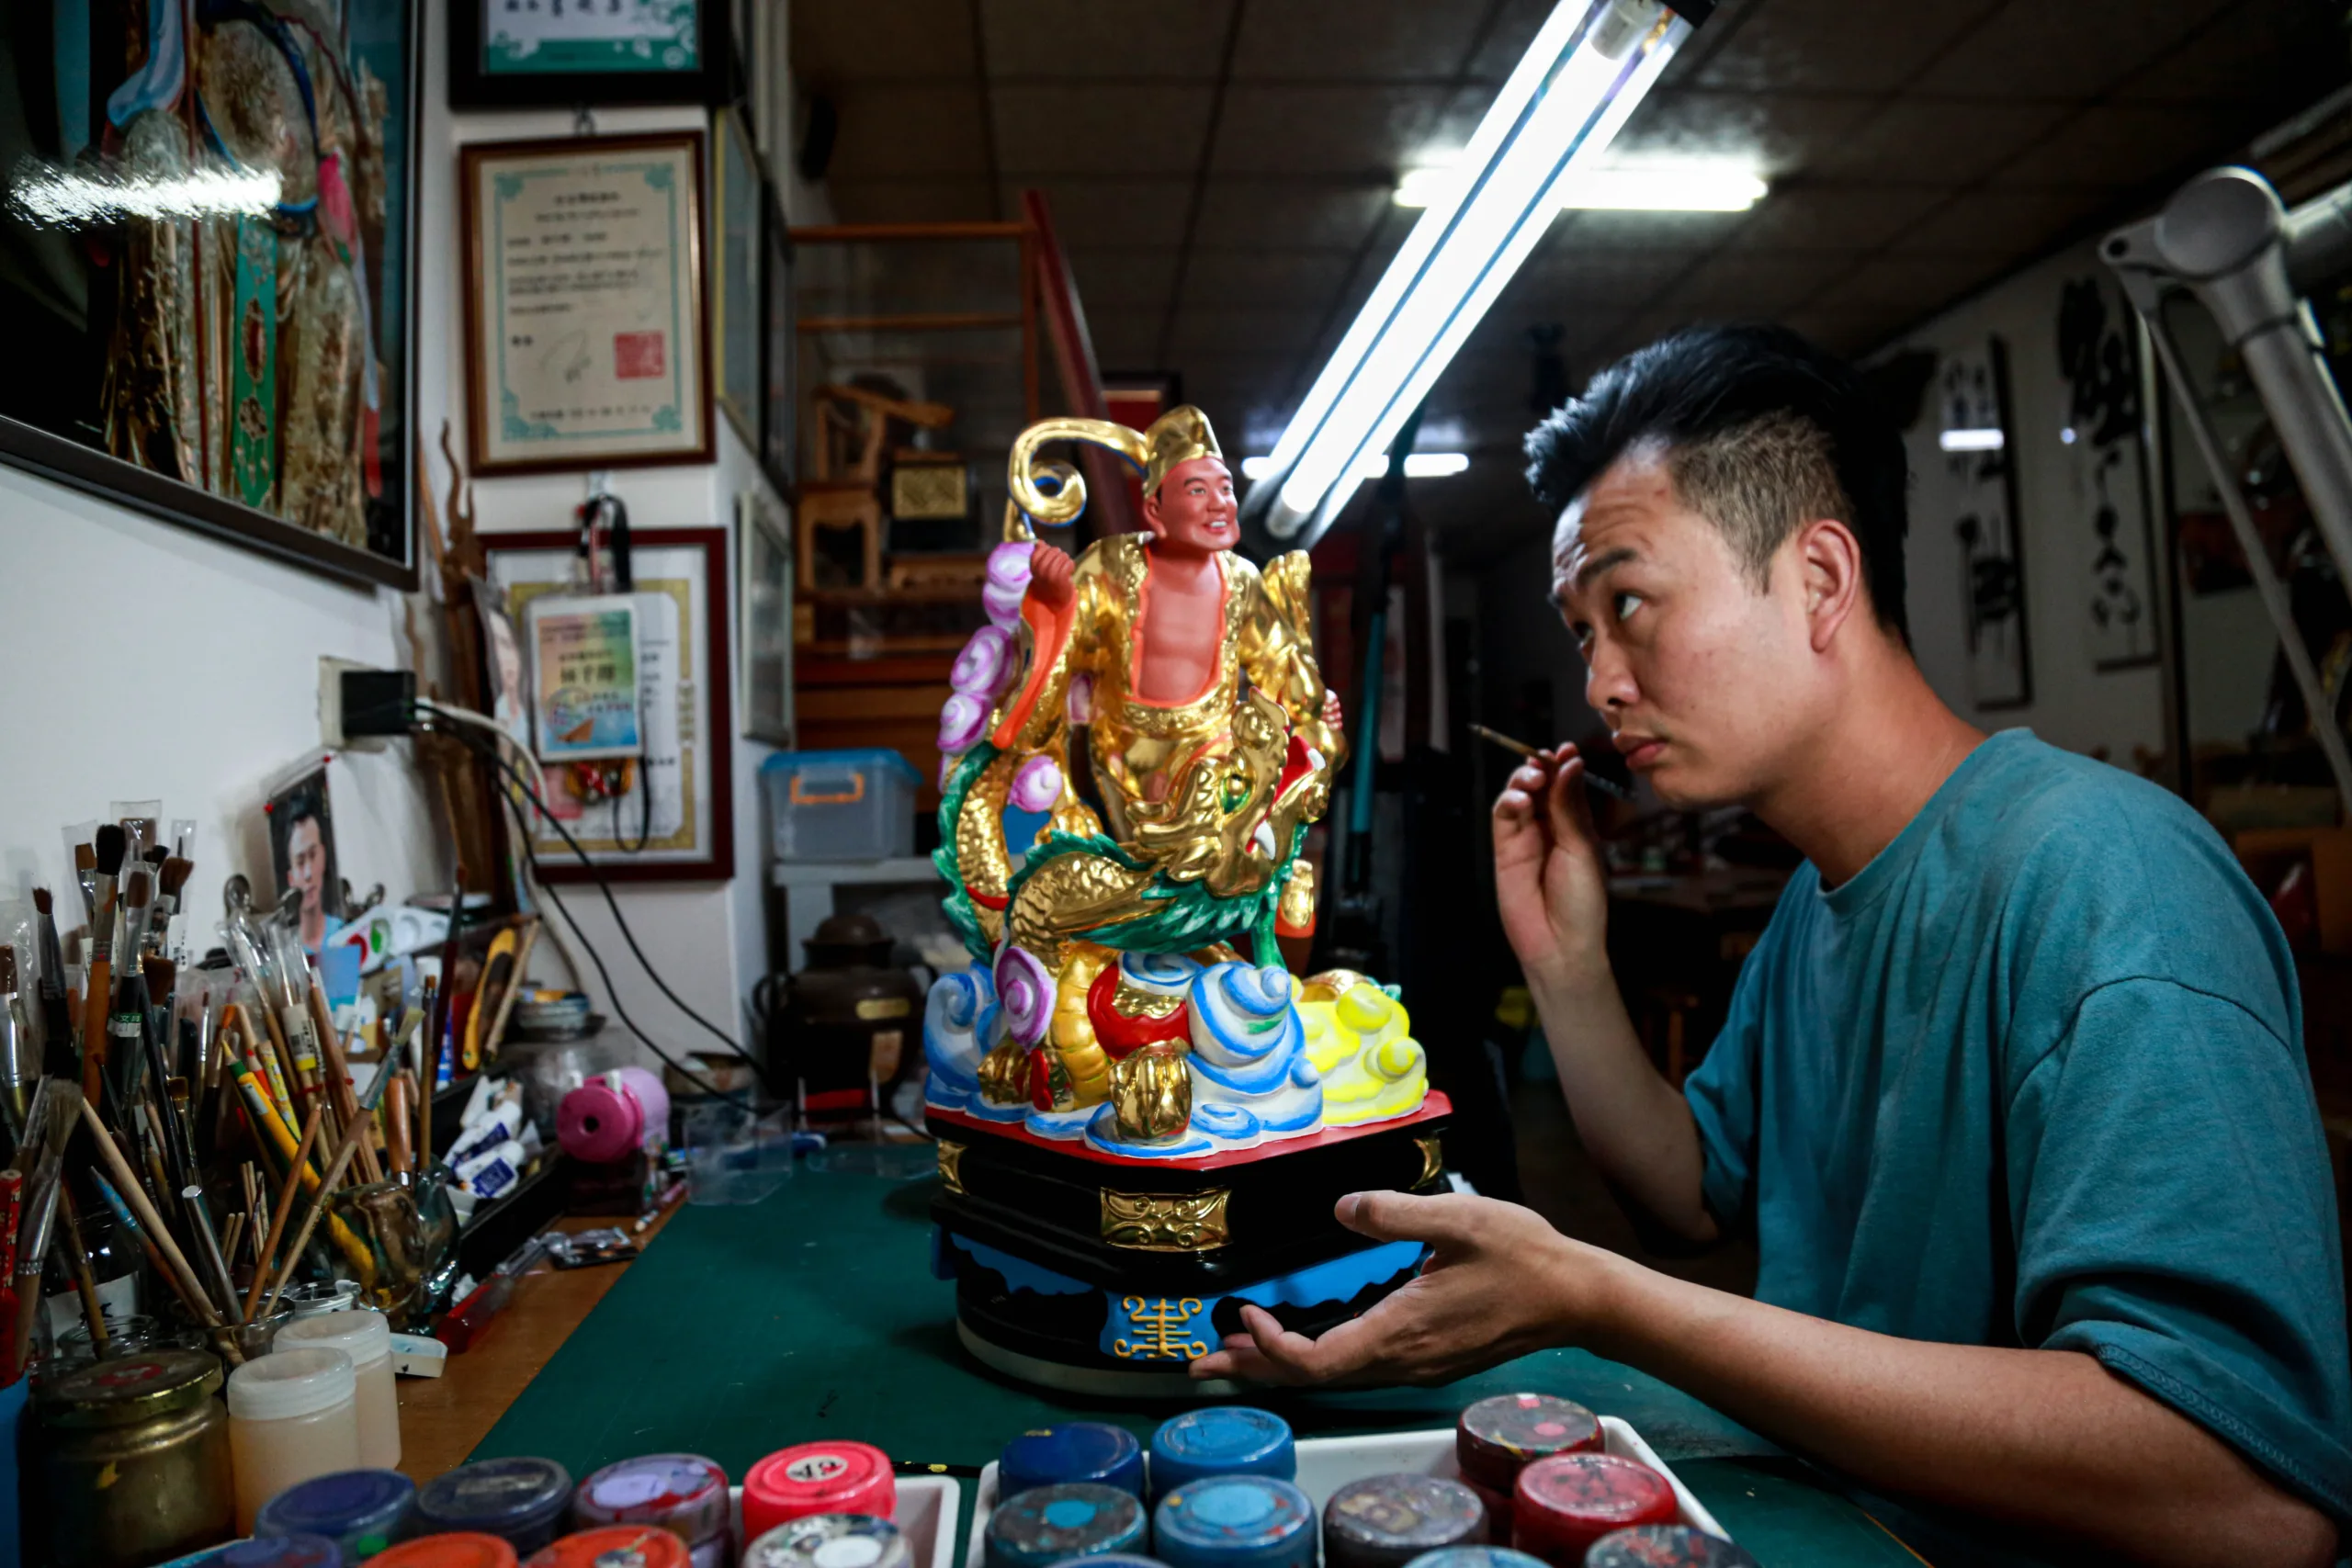 【攝影報導】由代工至創作 以傳統跨越神佛產業桎梏